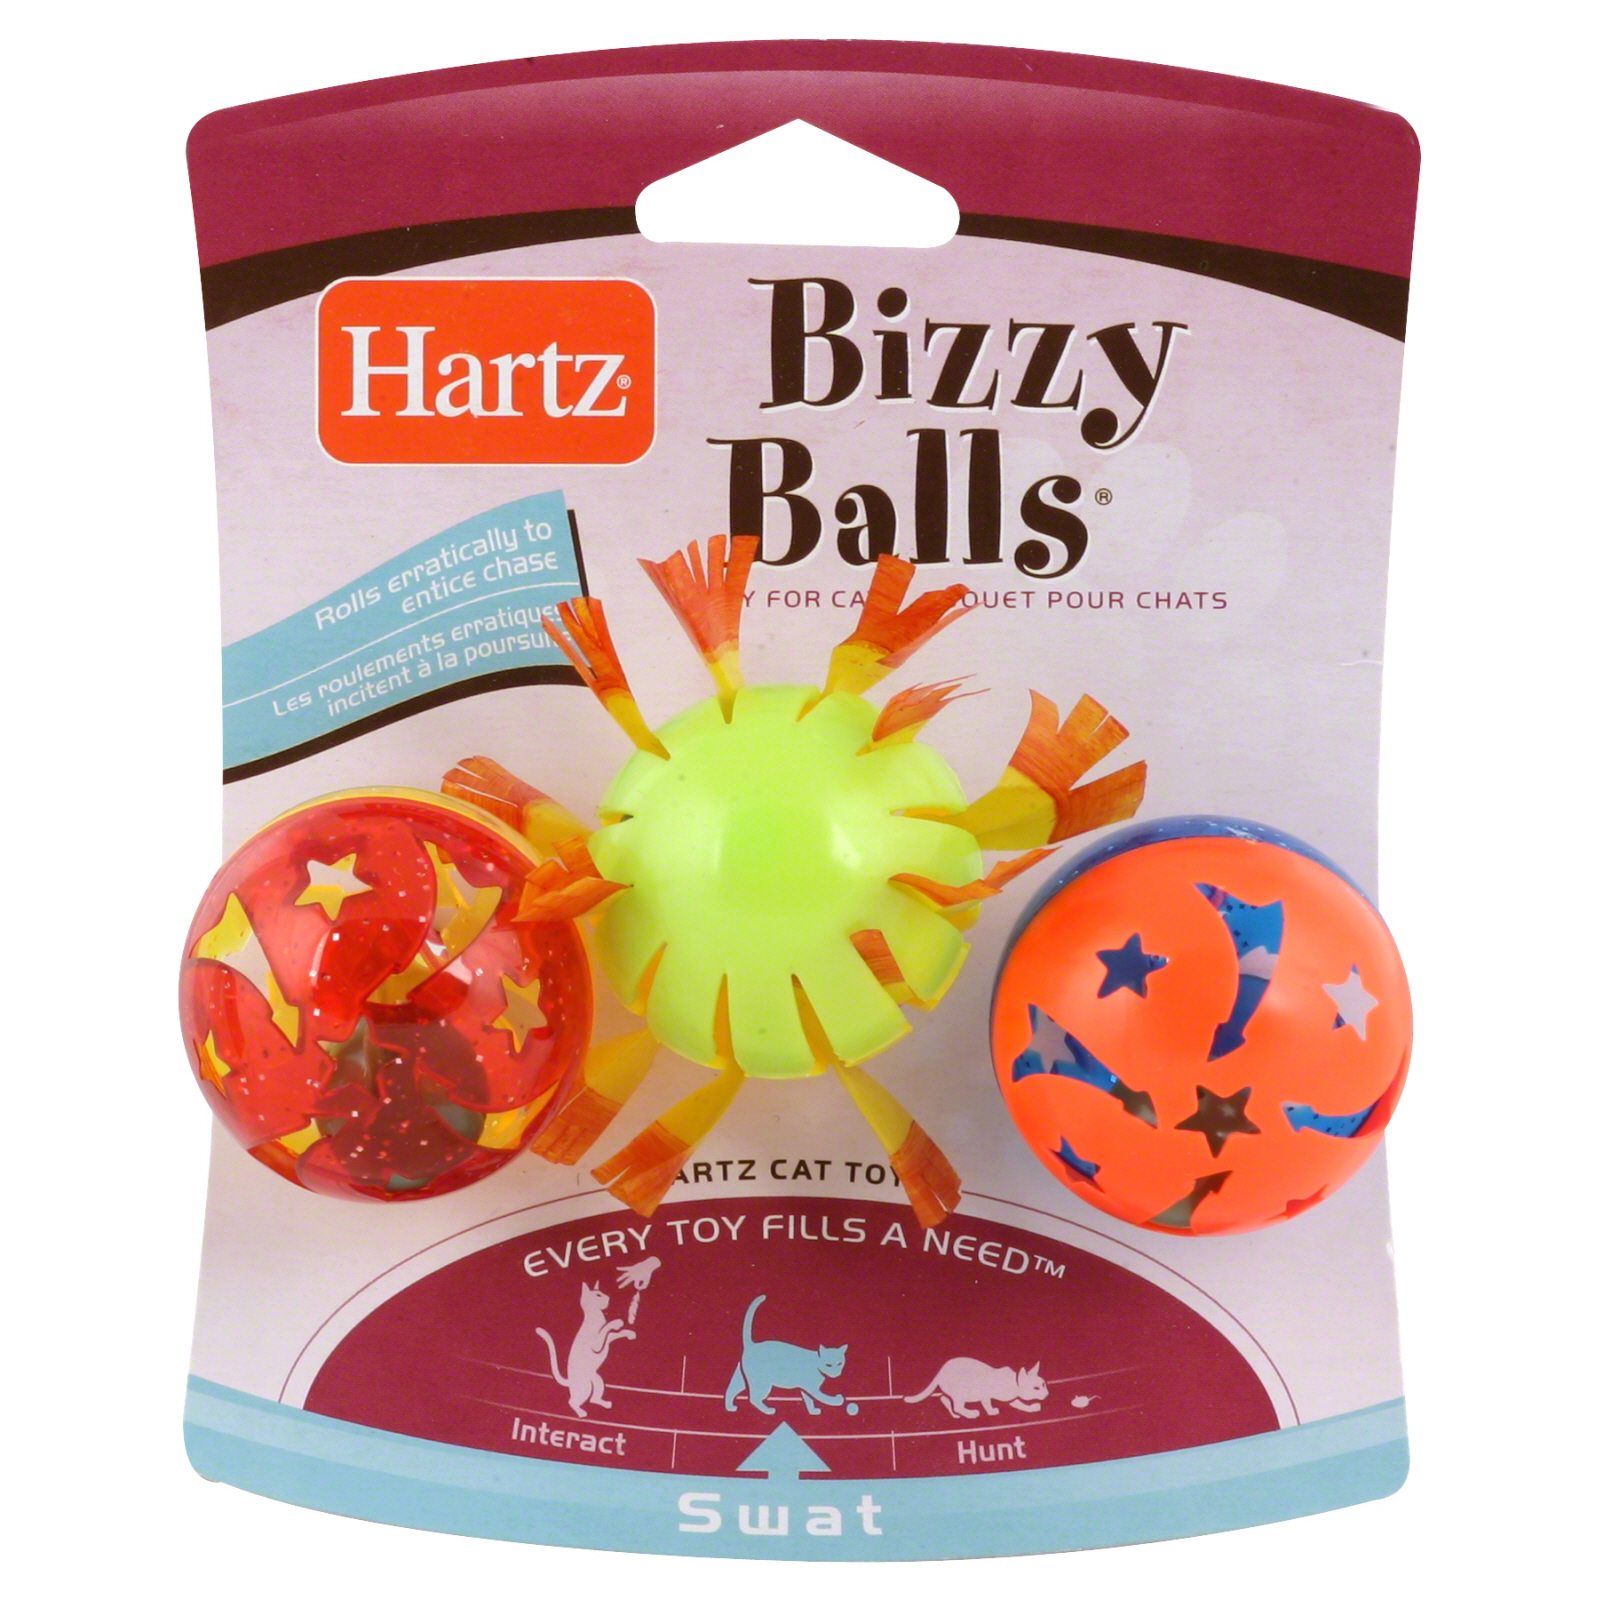 Hartz Swat Cat Toy, Bizzy Balls, 3 toys